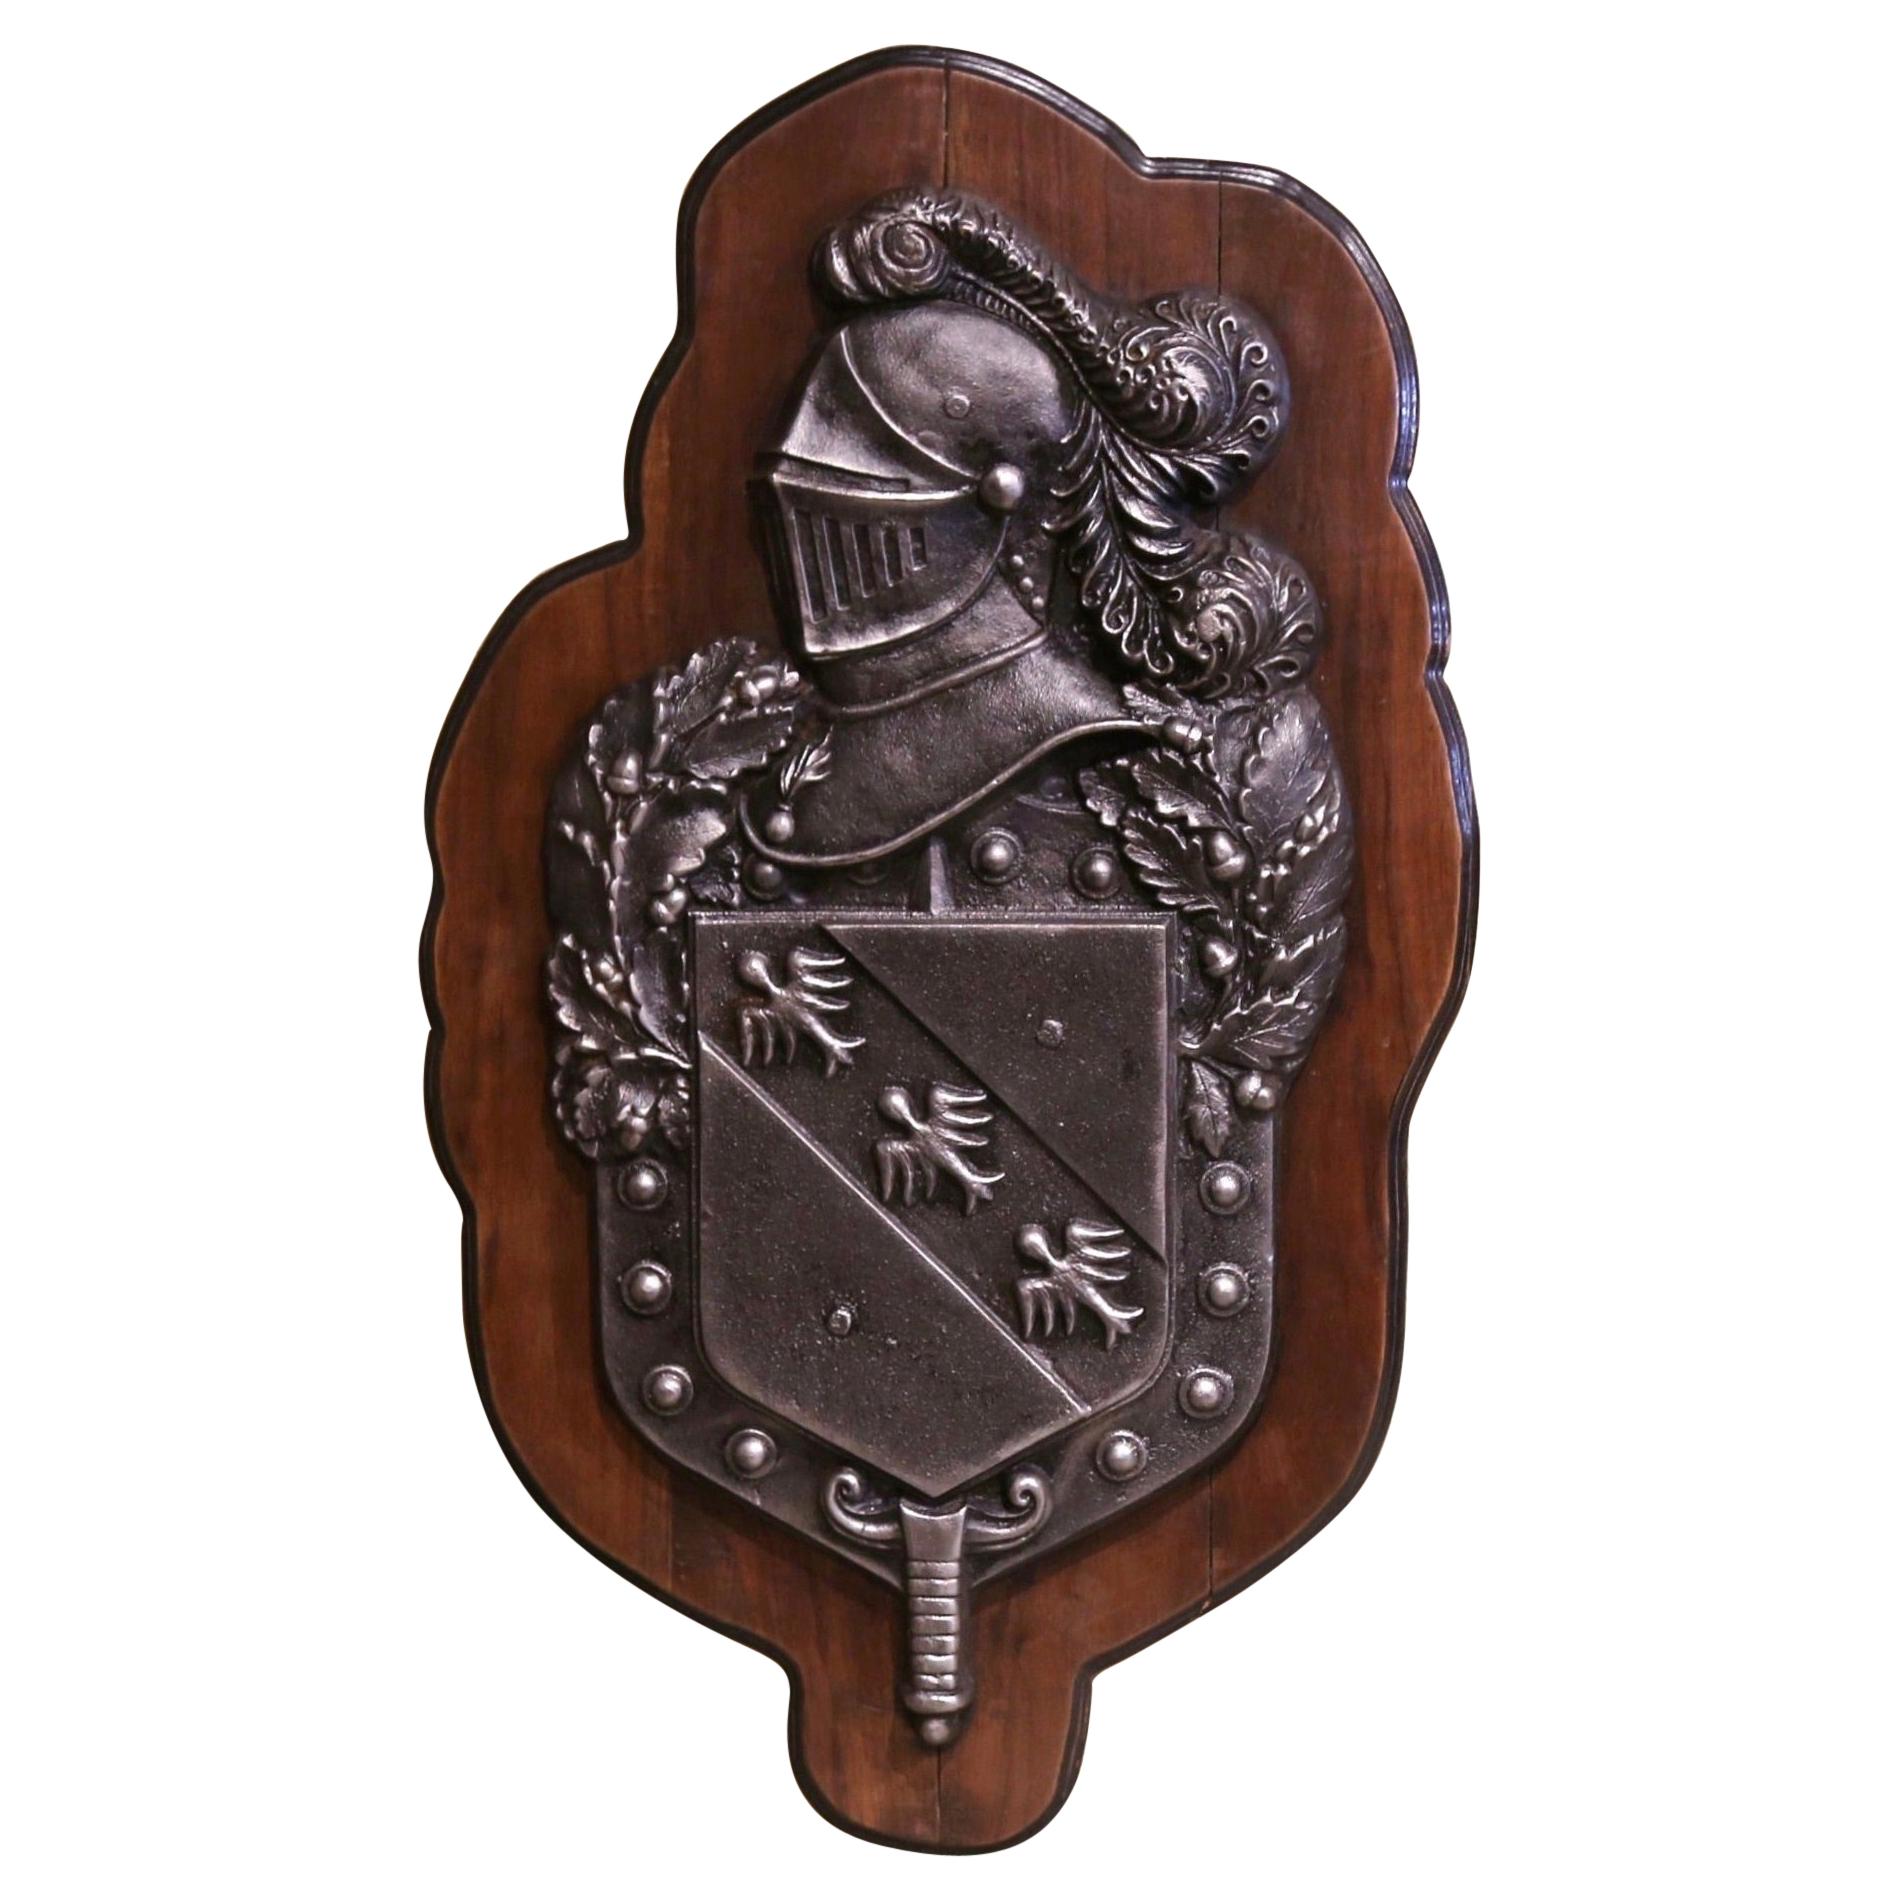 Französisches Wappen aus poliertem Eisen im Renaissance-Stil des 19. Jahrhunderts auf Walnussholztafel